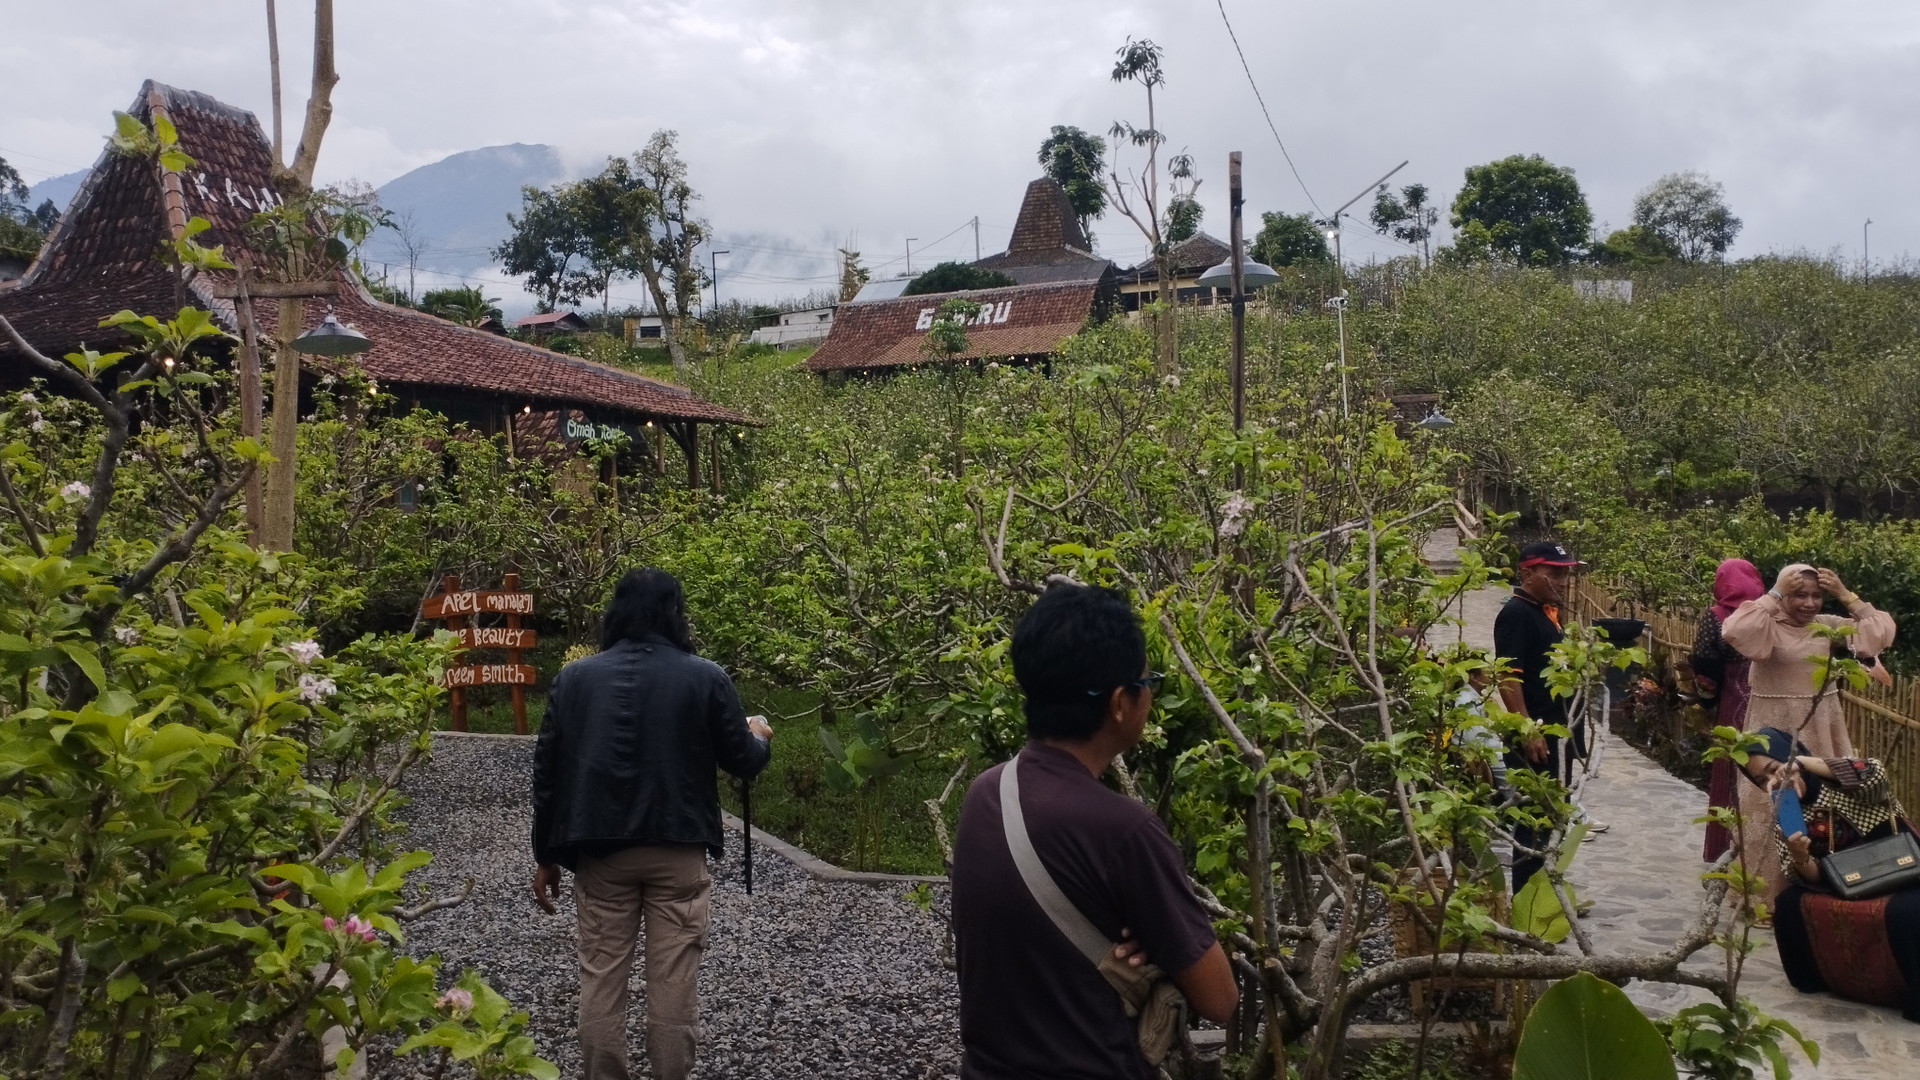 Wisata Dusun Kuliner, Menikmati Kuliner Tradisional di Tengah Kebun Apel